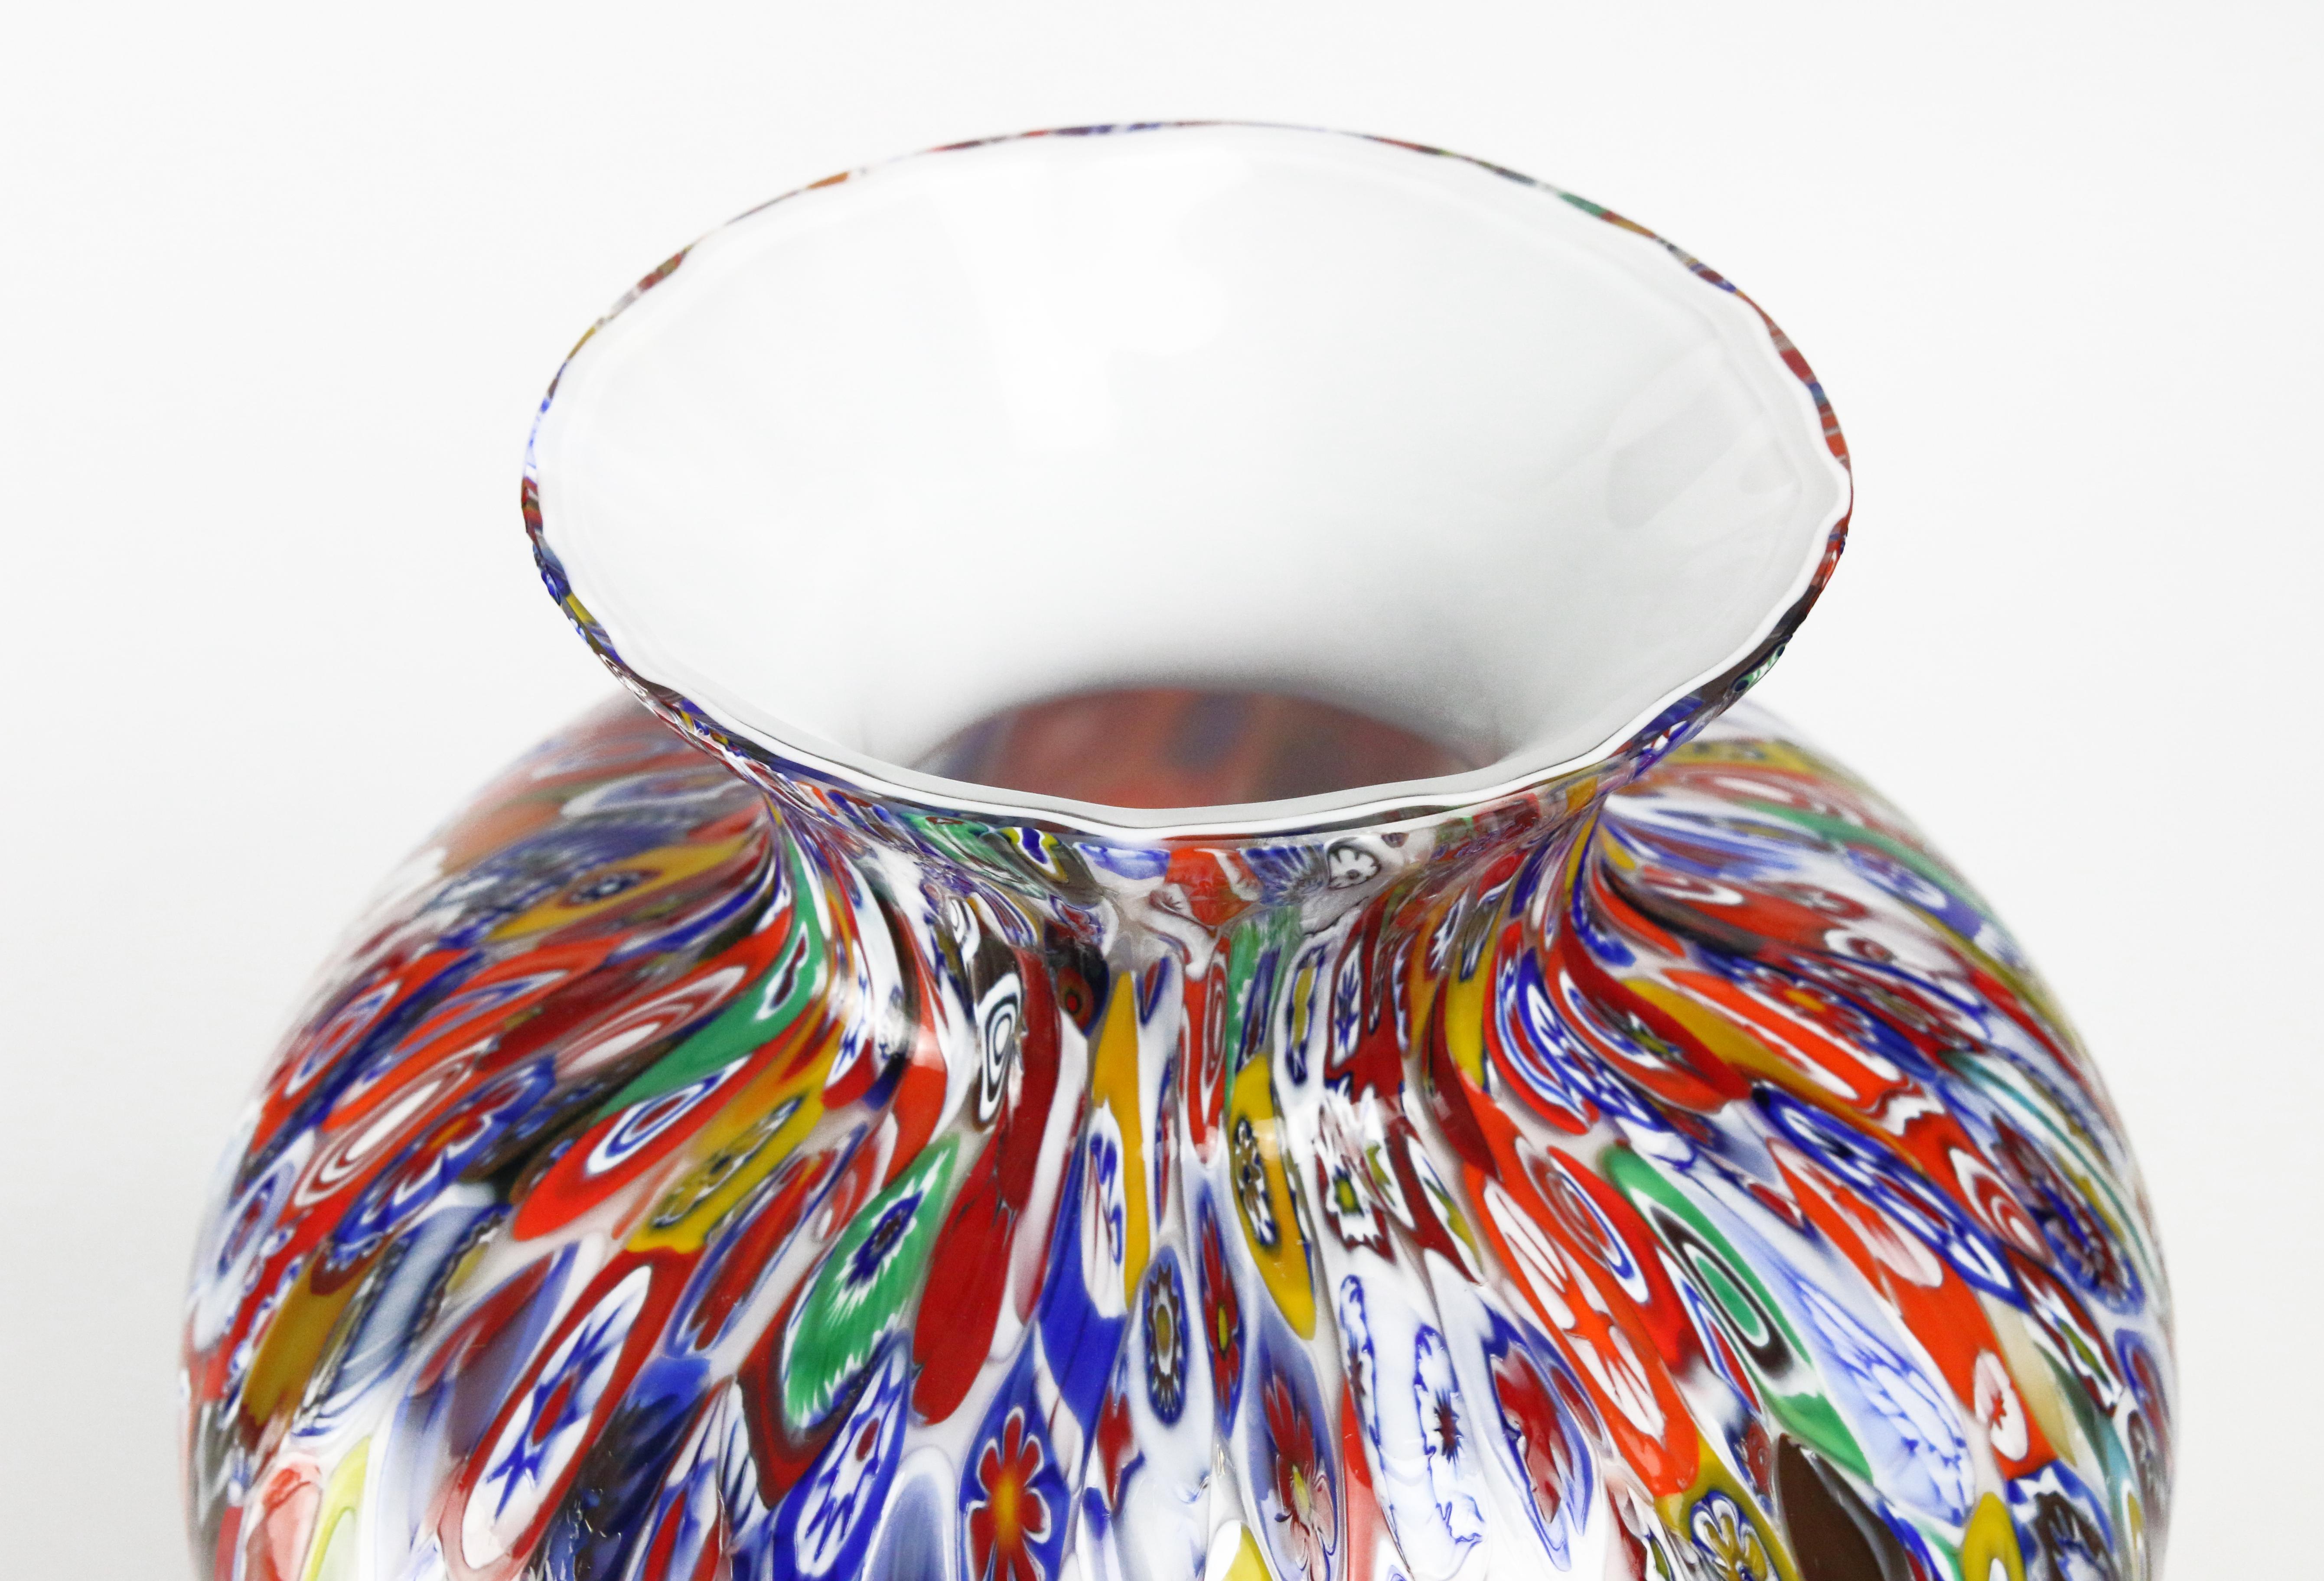 Art Glass 1295 Murano Hand Blown Glass Millefiori Murrine Vase Limited Edition